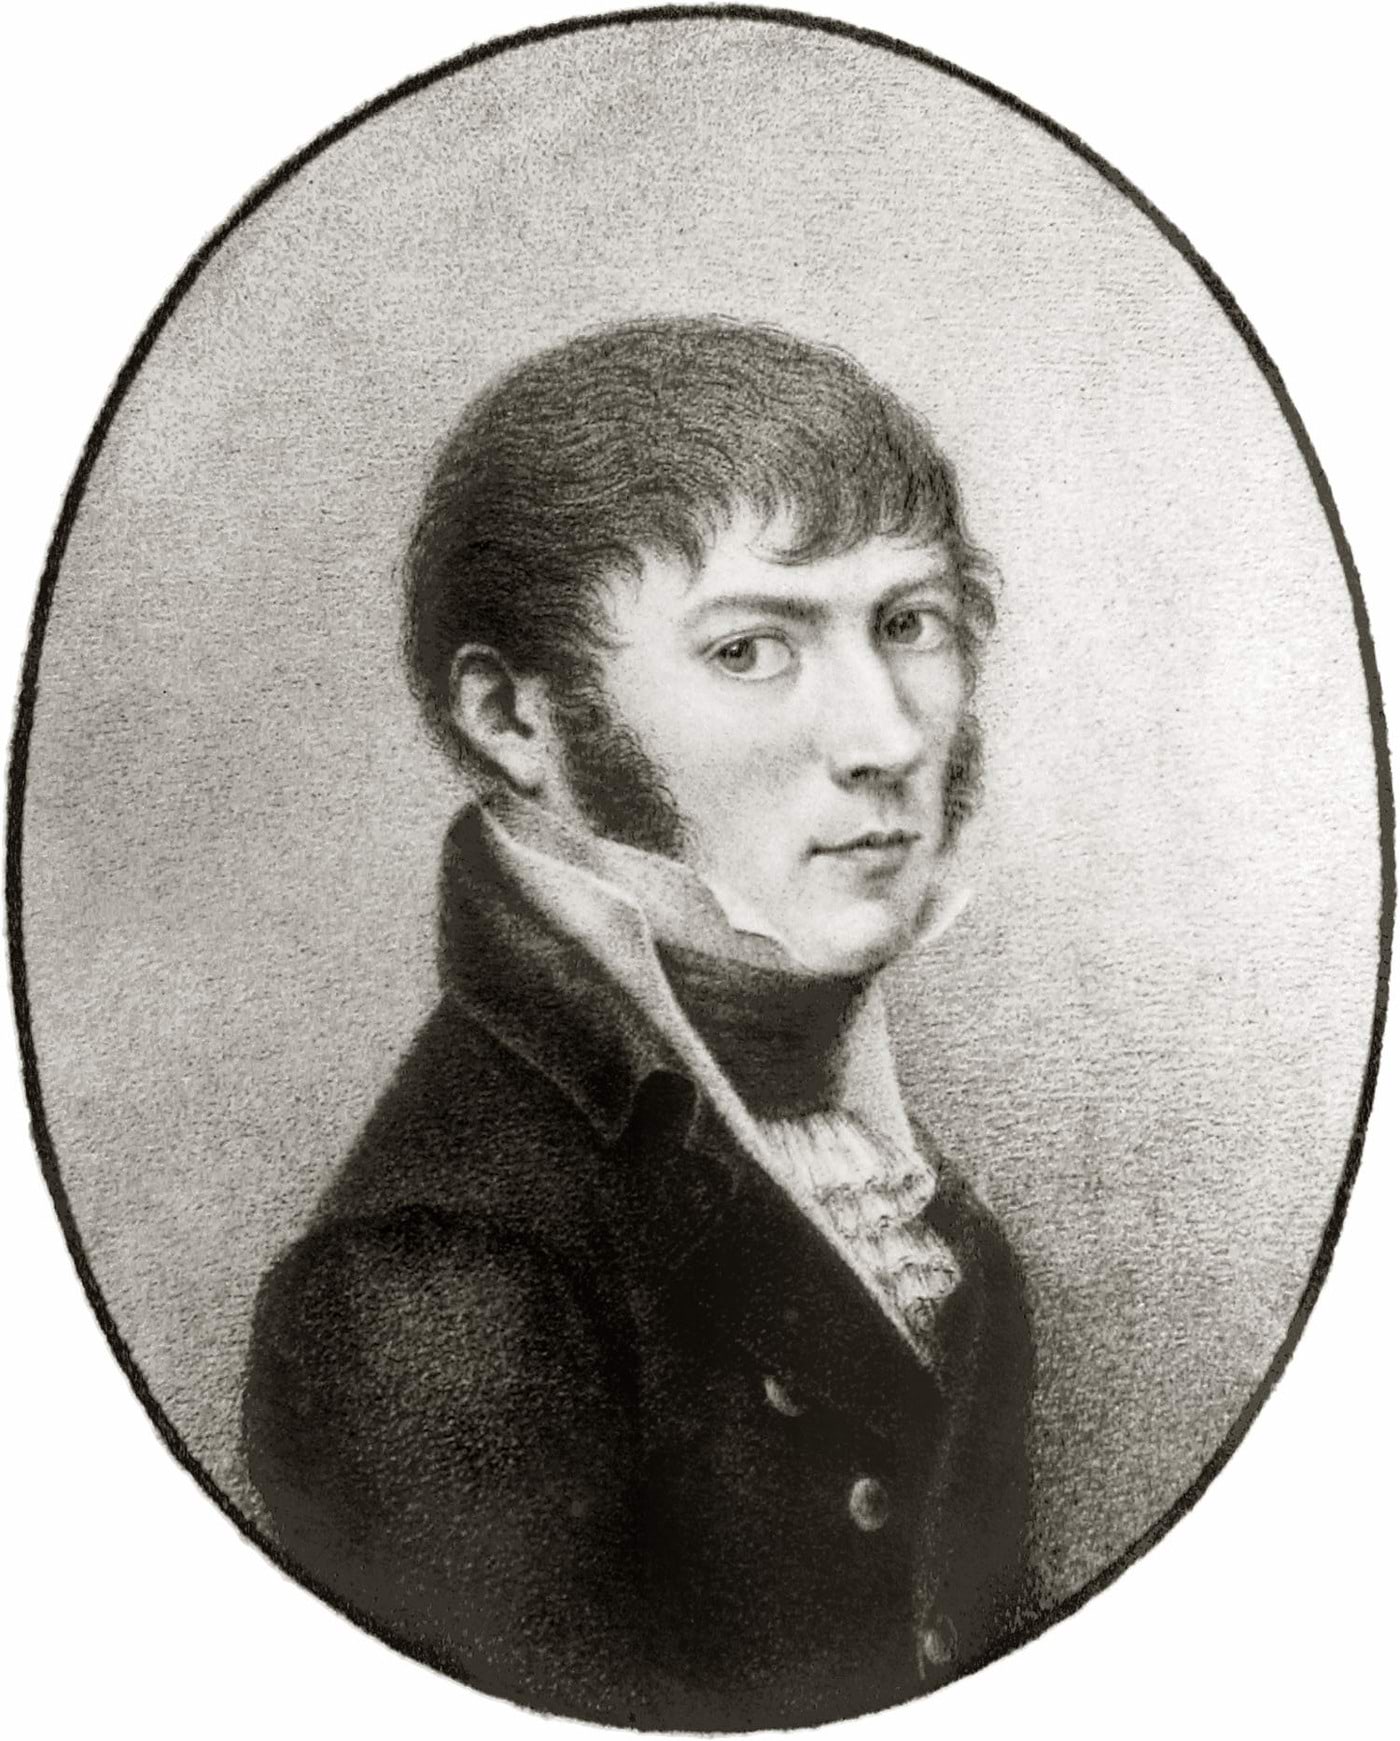 Joseph von Fraunhofer (1787 - 1826)